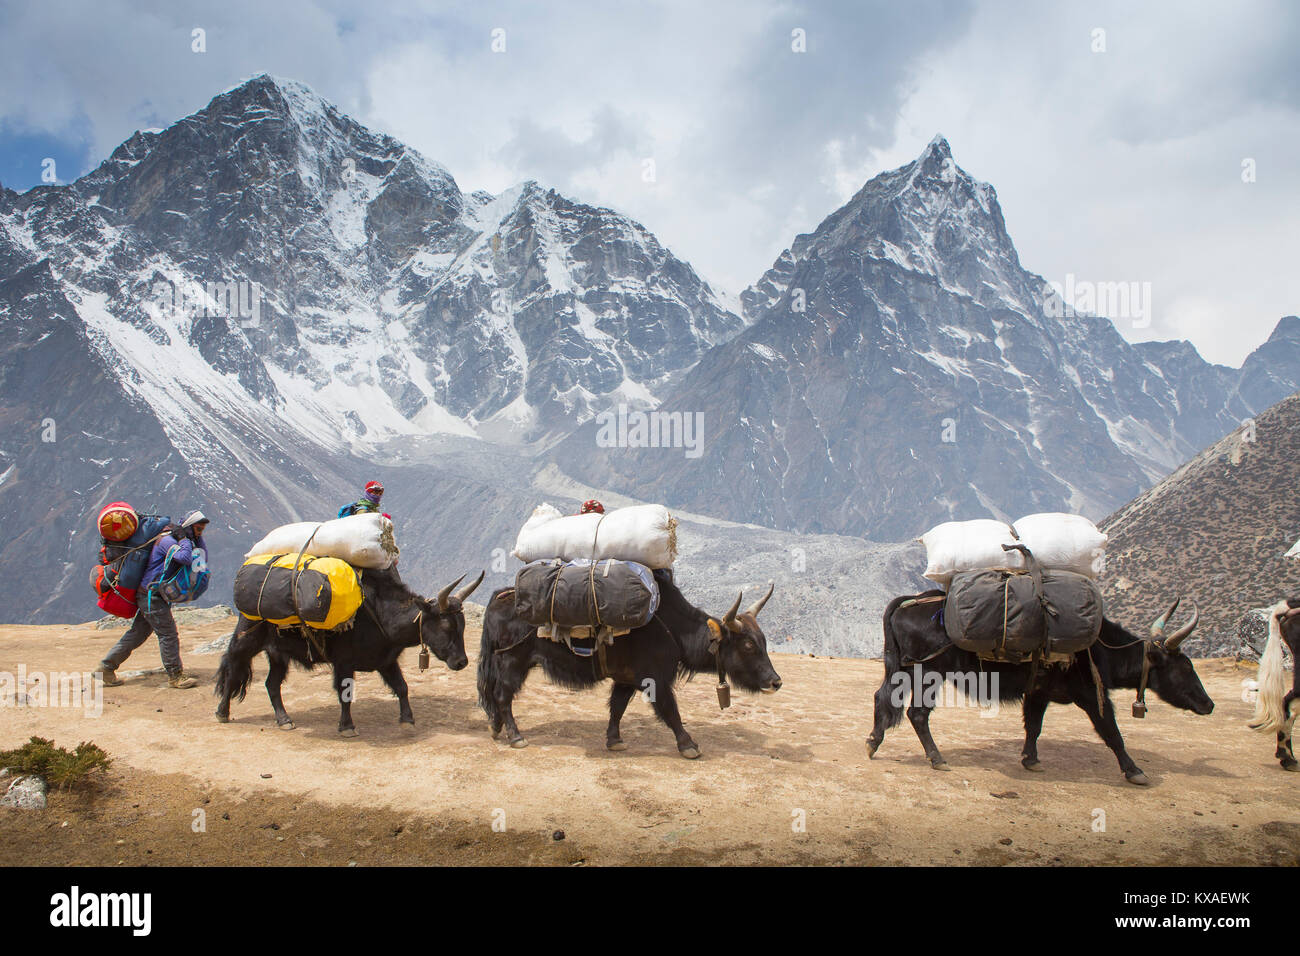 Eine Karawane von yaks Tragen schwerer Lasten auf dem Weg zum Everest Base Camp. Am Abend werden Sie mit köstlichen Nepalesische Küche rund um die Küche belohnt werden - Zimmer Brand bei einem Sherpa Kaffee und Unterhalten mit anderen gleichgesinnten Reisenden. Stockfoto